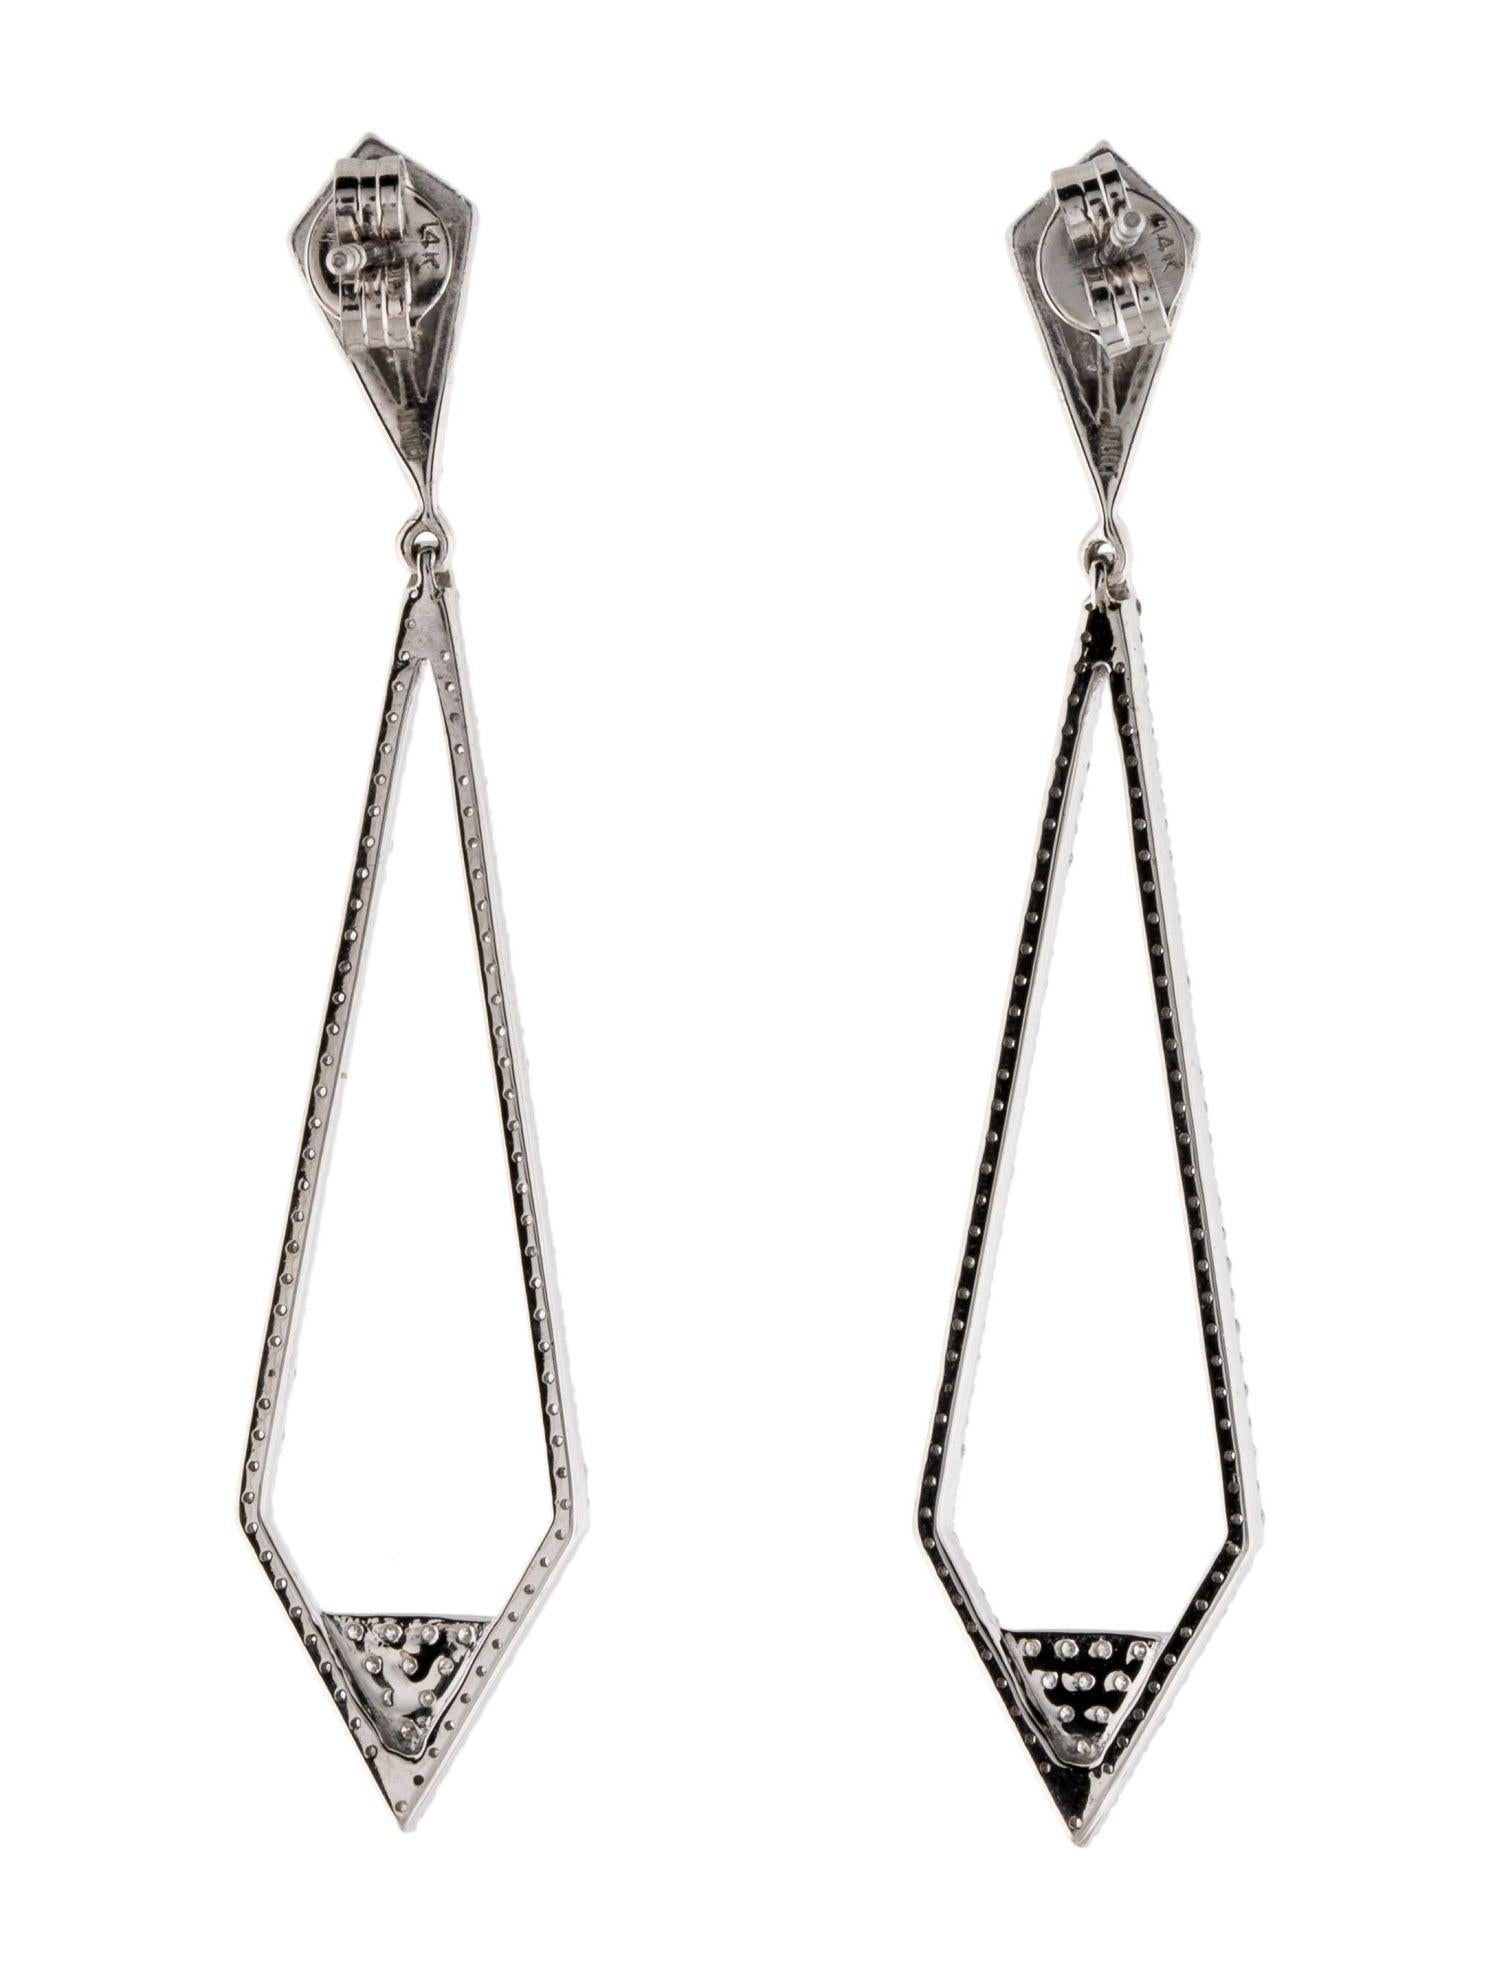 Women's Stunning 14K Diamond Drop Earrings - 1.13ctw Sparkle & Style, Elegant Jewelry For Sale